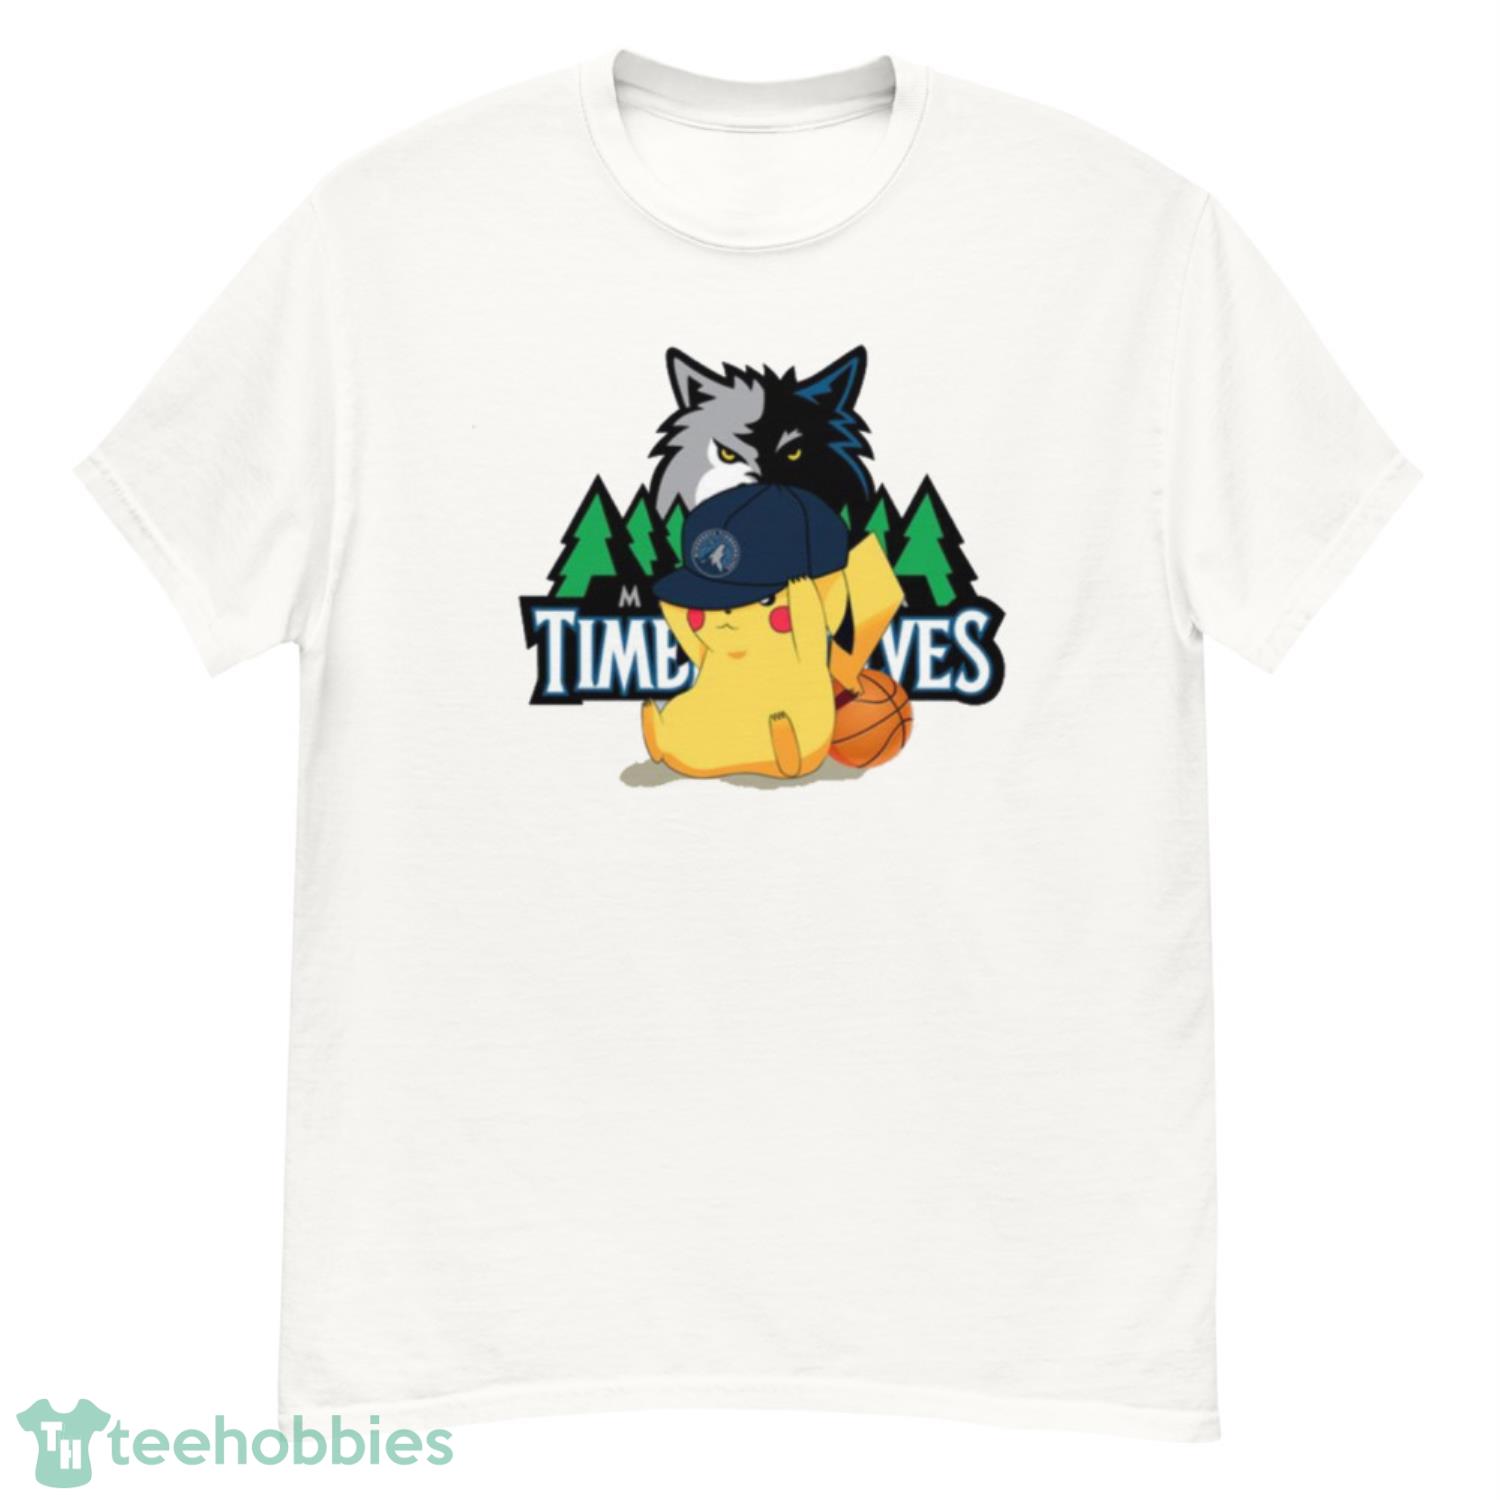 NBA Pikachu Basketball Sports Minnesota Timberwolves T Shirt Product Photo 1